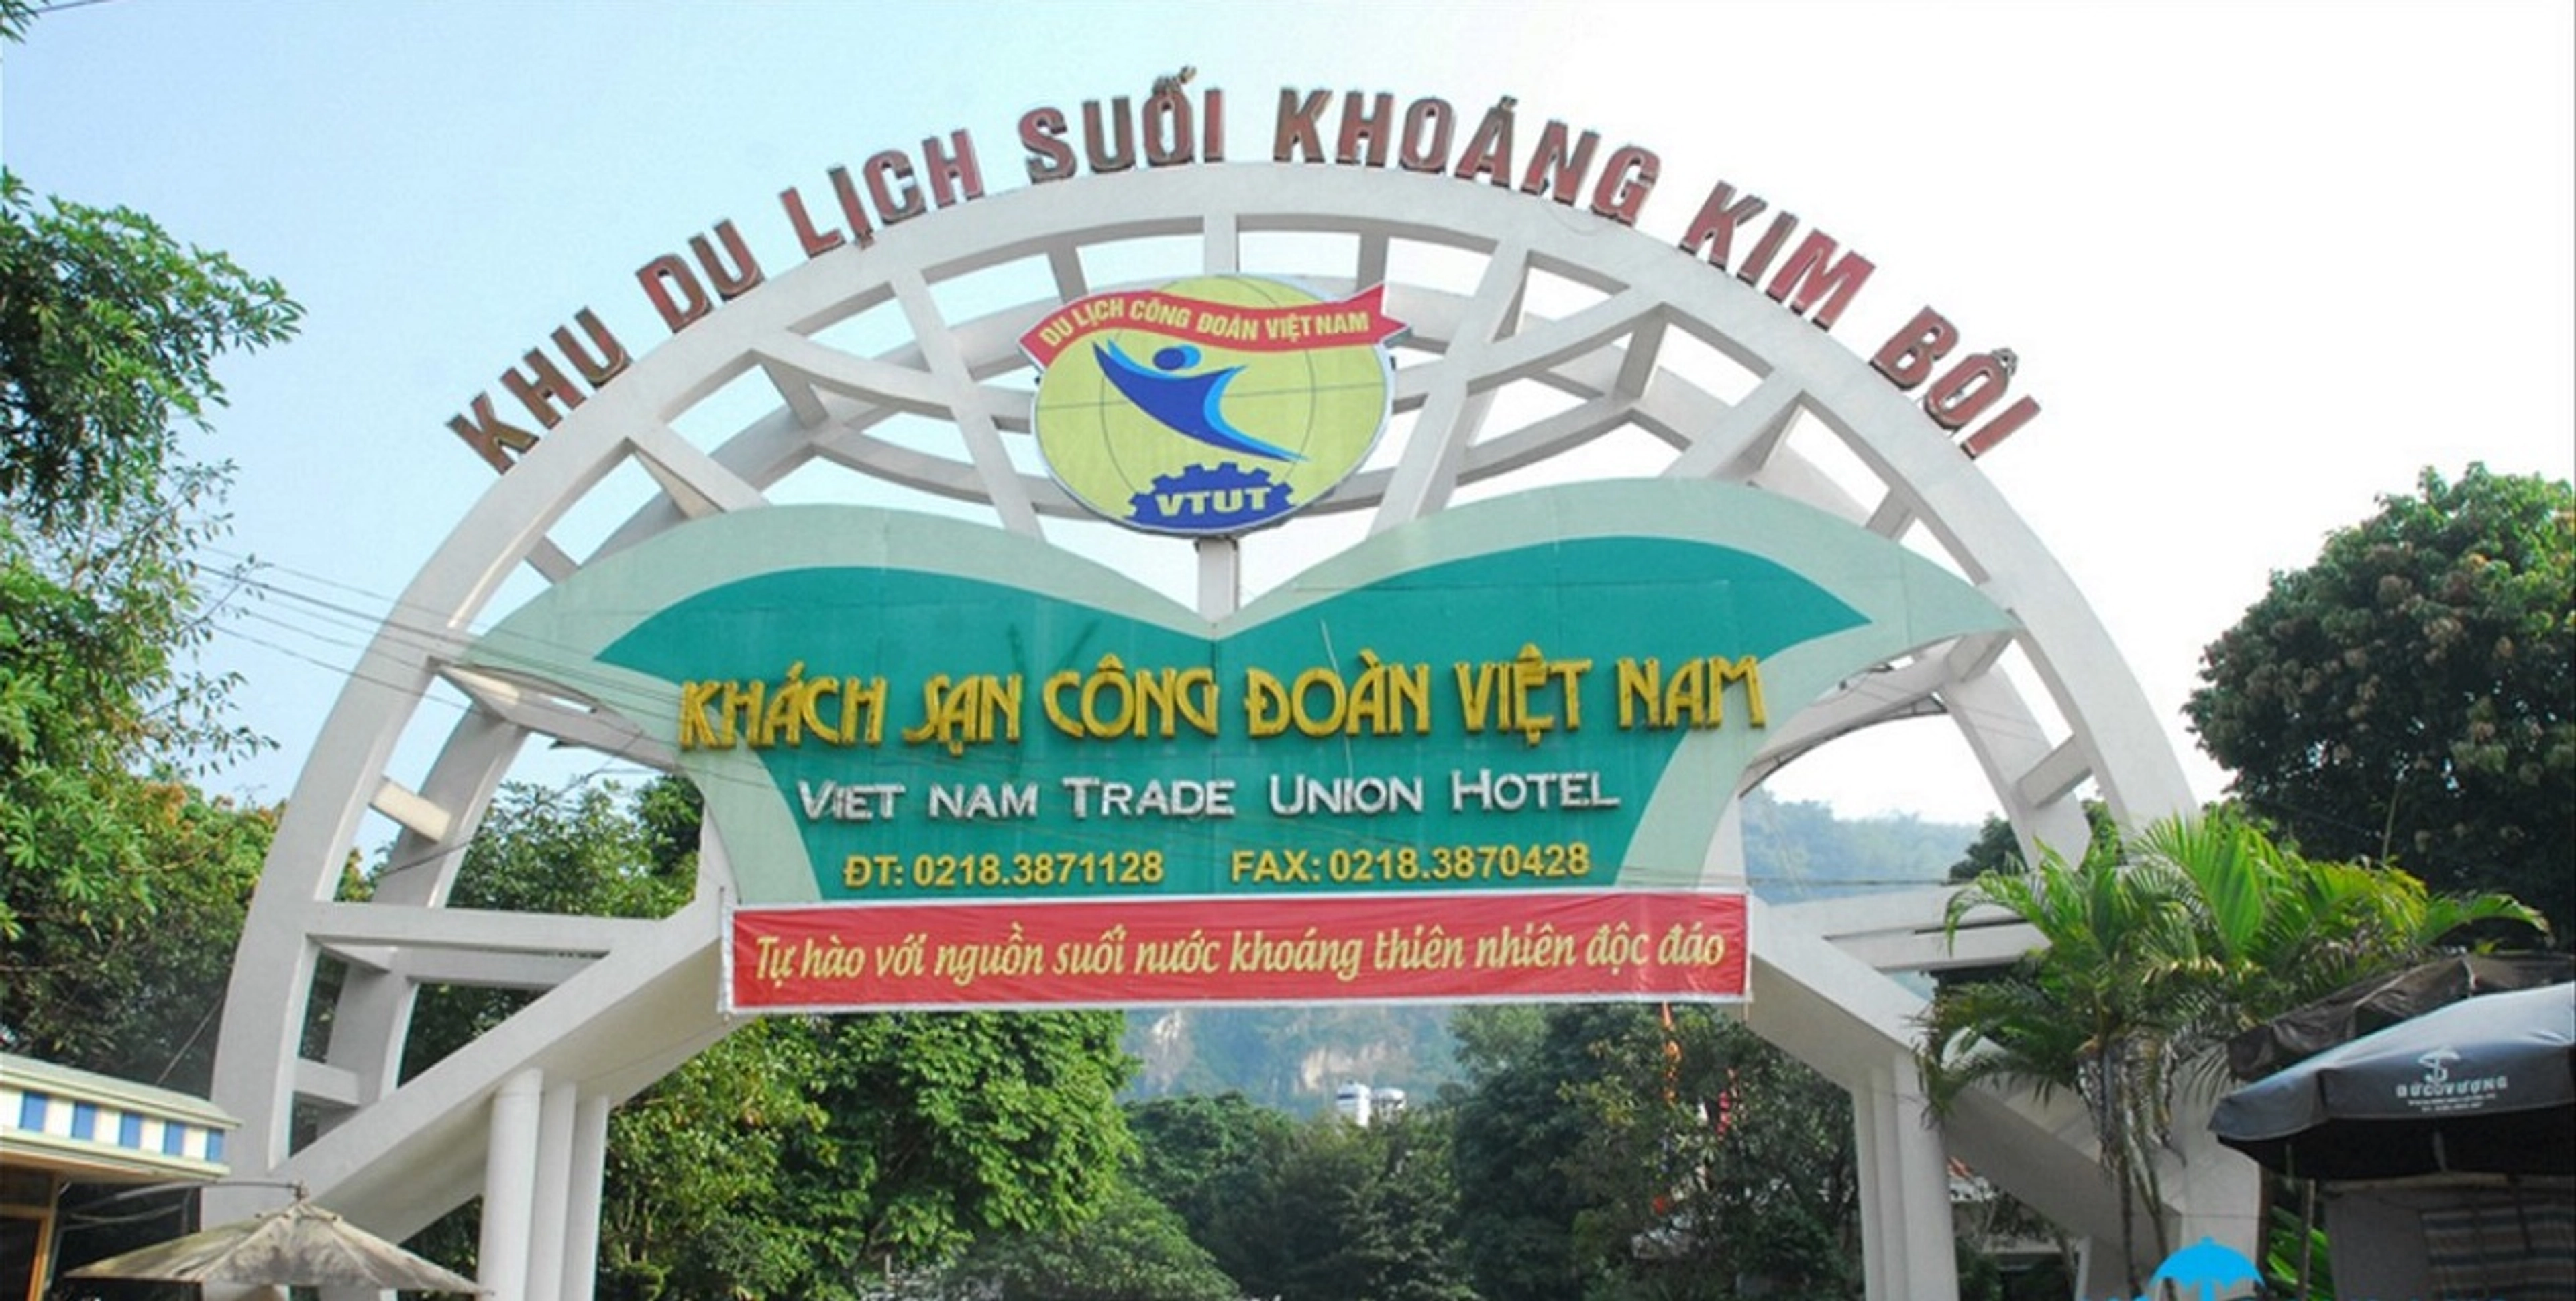 Tour du lịch Hòa Bình 2 ngày 1 đêm: Khu du lịch suối khoáng nóng Kim Bôi